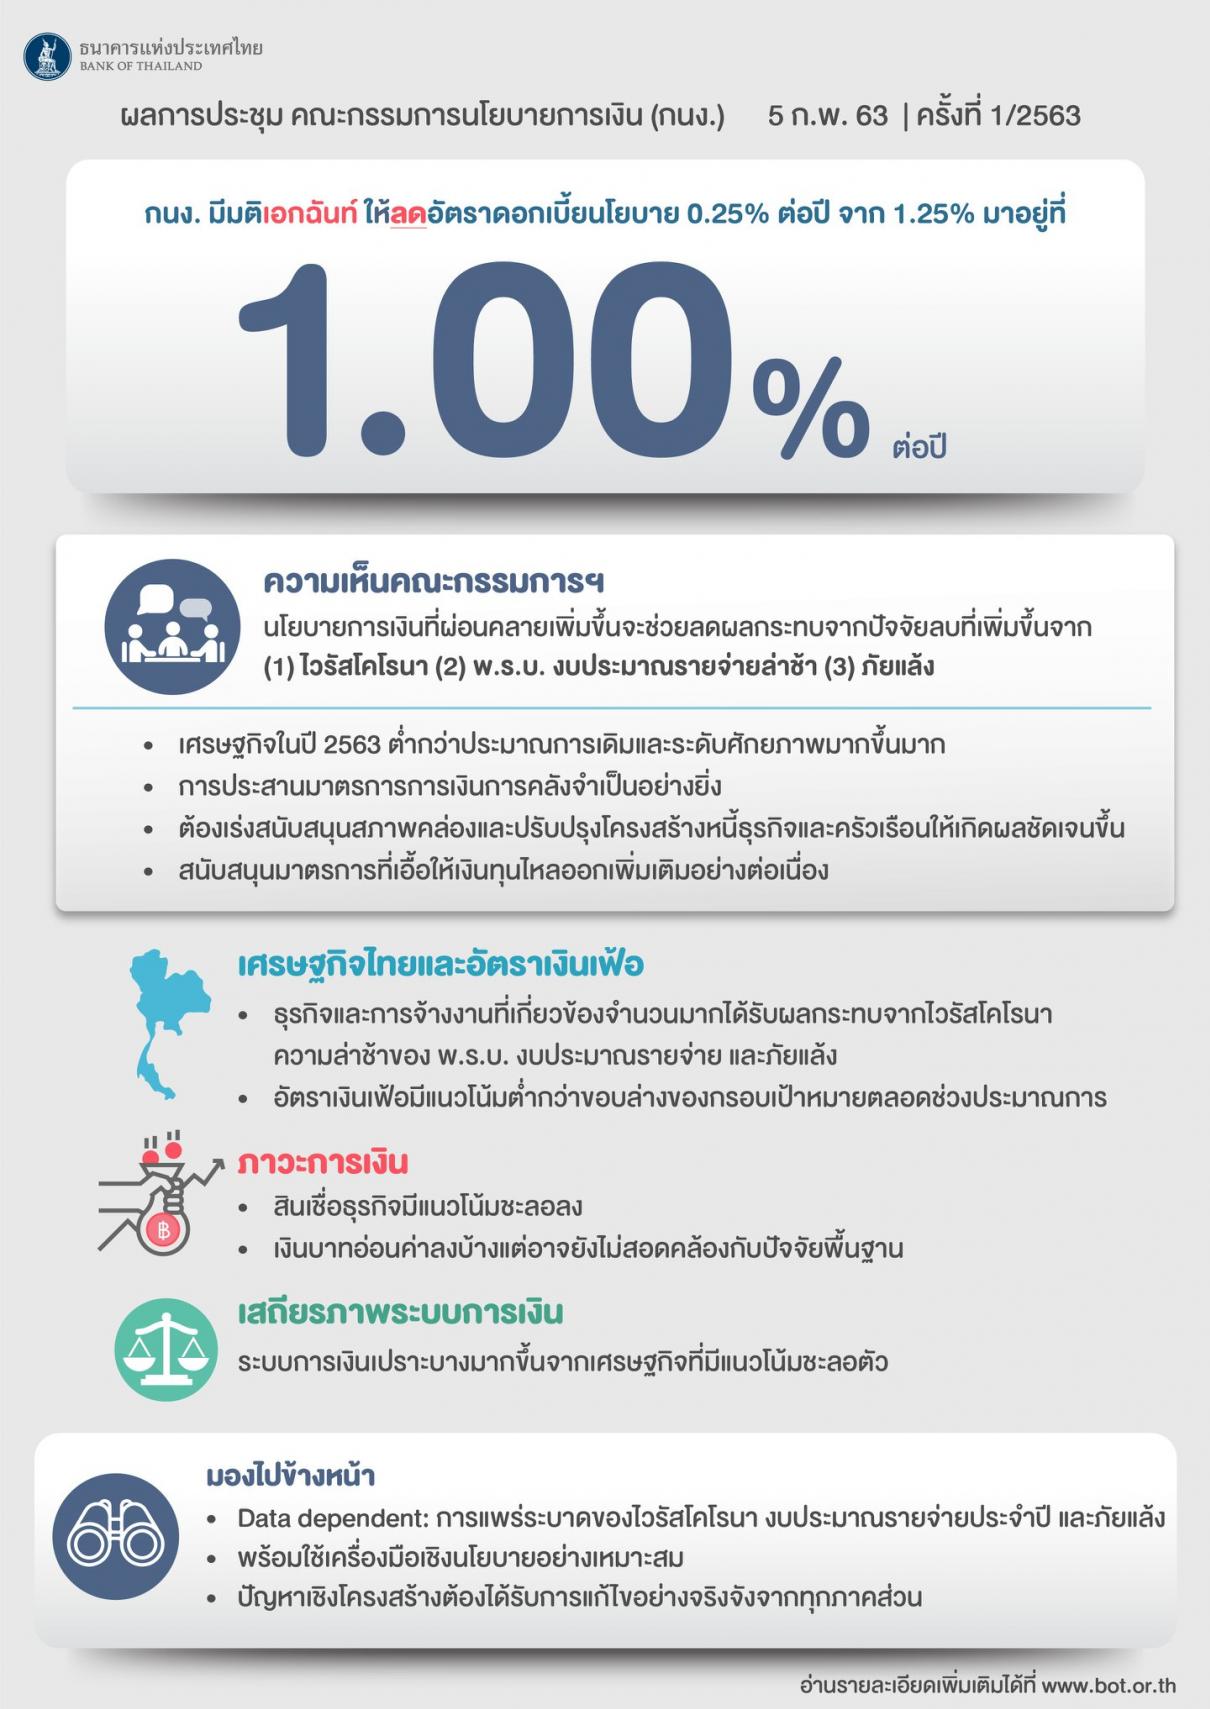 ธนาคารแห่งประเทศไทย ลดอัตราดอกเบี้ยนโยบายร้อยละ 0.25 ต่อปี จากร้อยละ 1.25 เป็นร้อยละ 1.00 ต่อปี